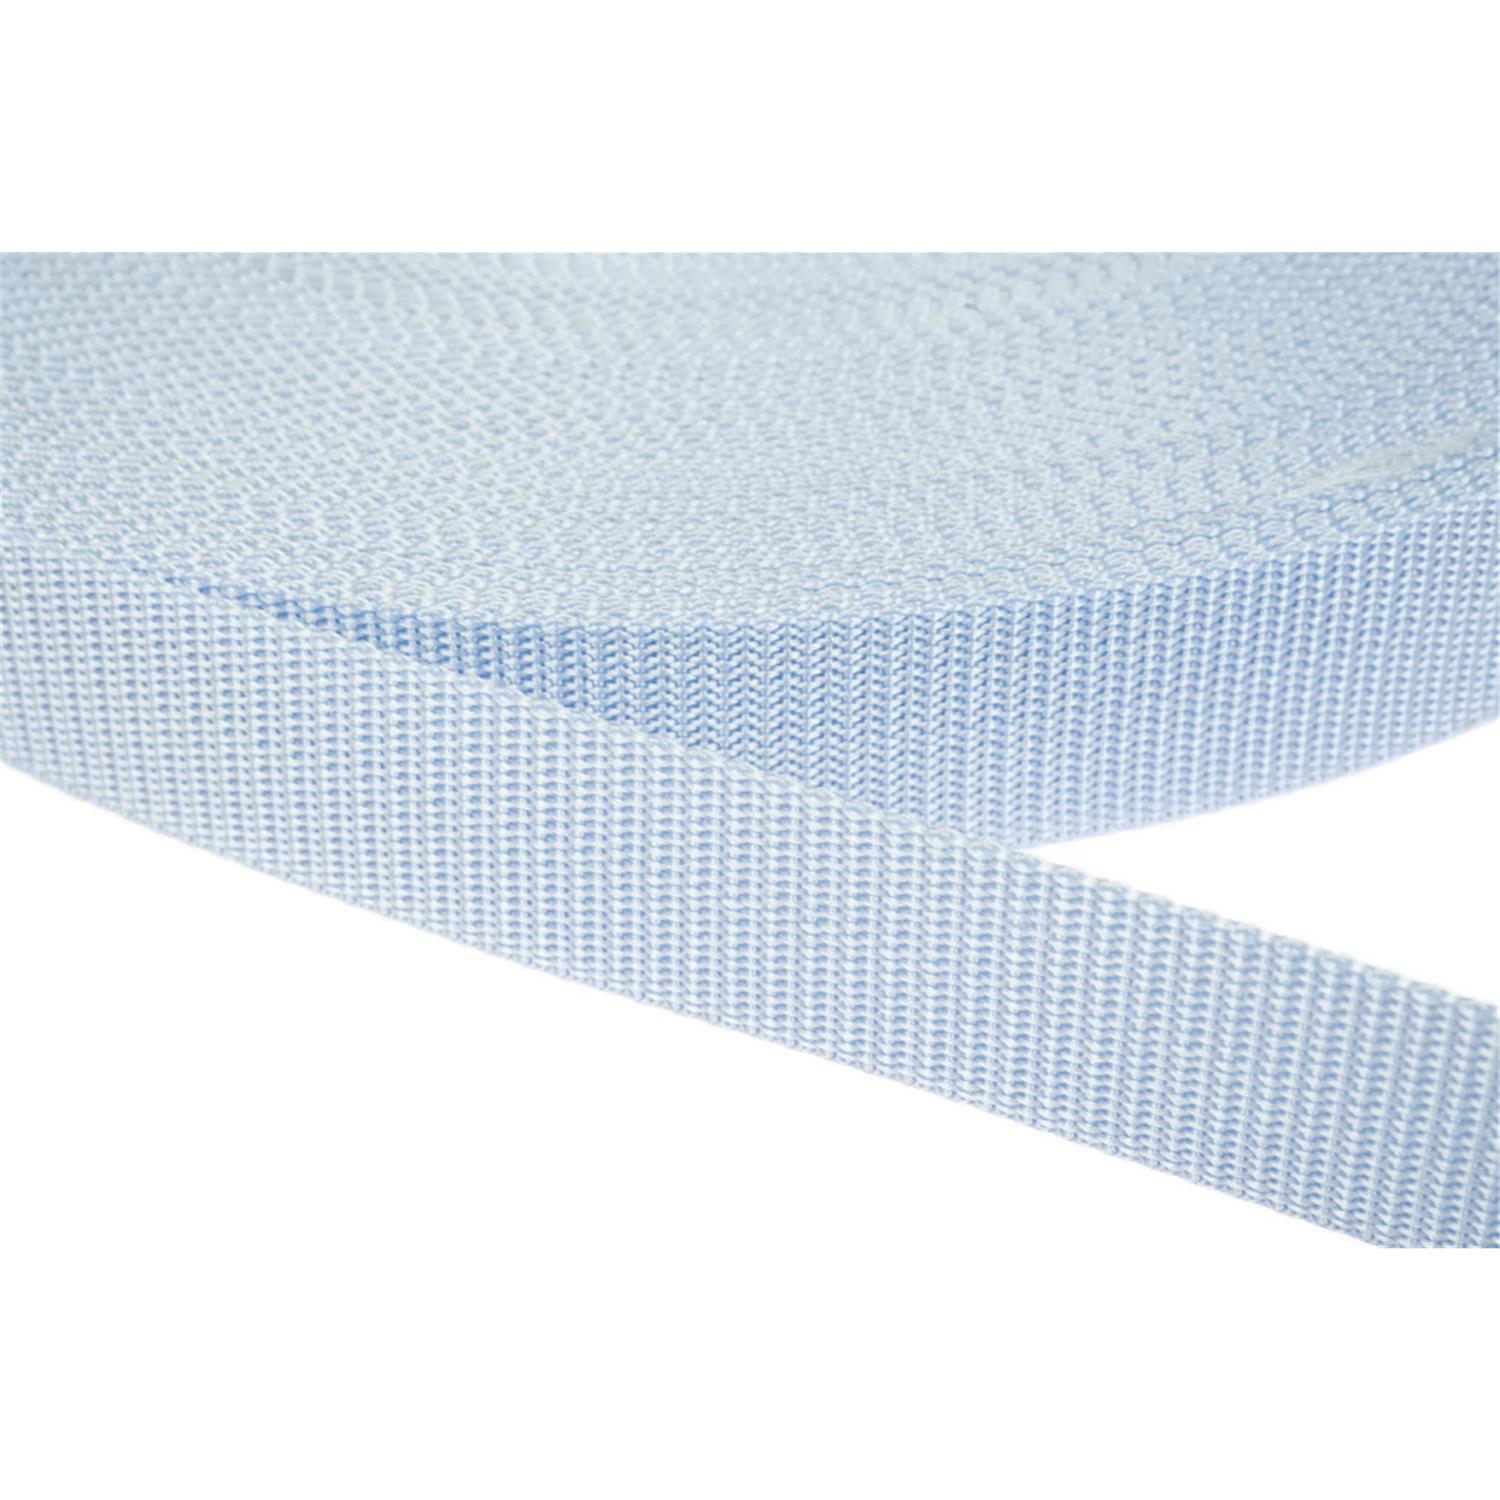 Gurtband 10mm breit aus Polypropylen in 41 Farben 25 - hellblau 12 Meter